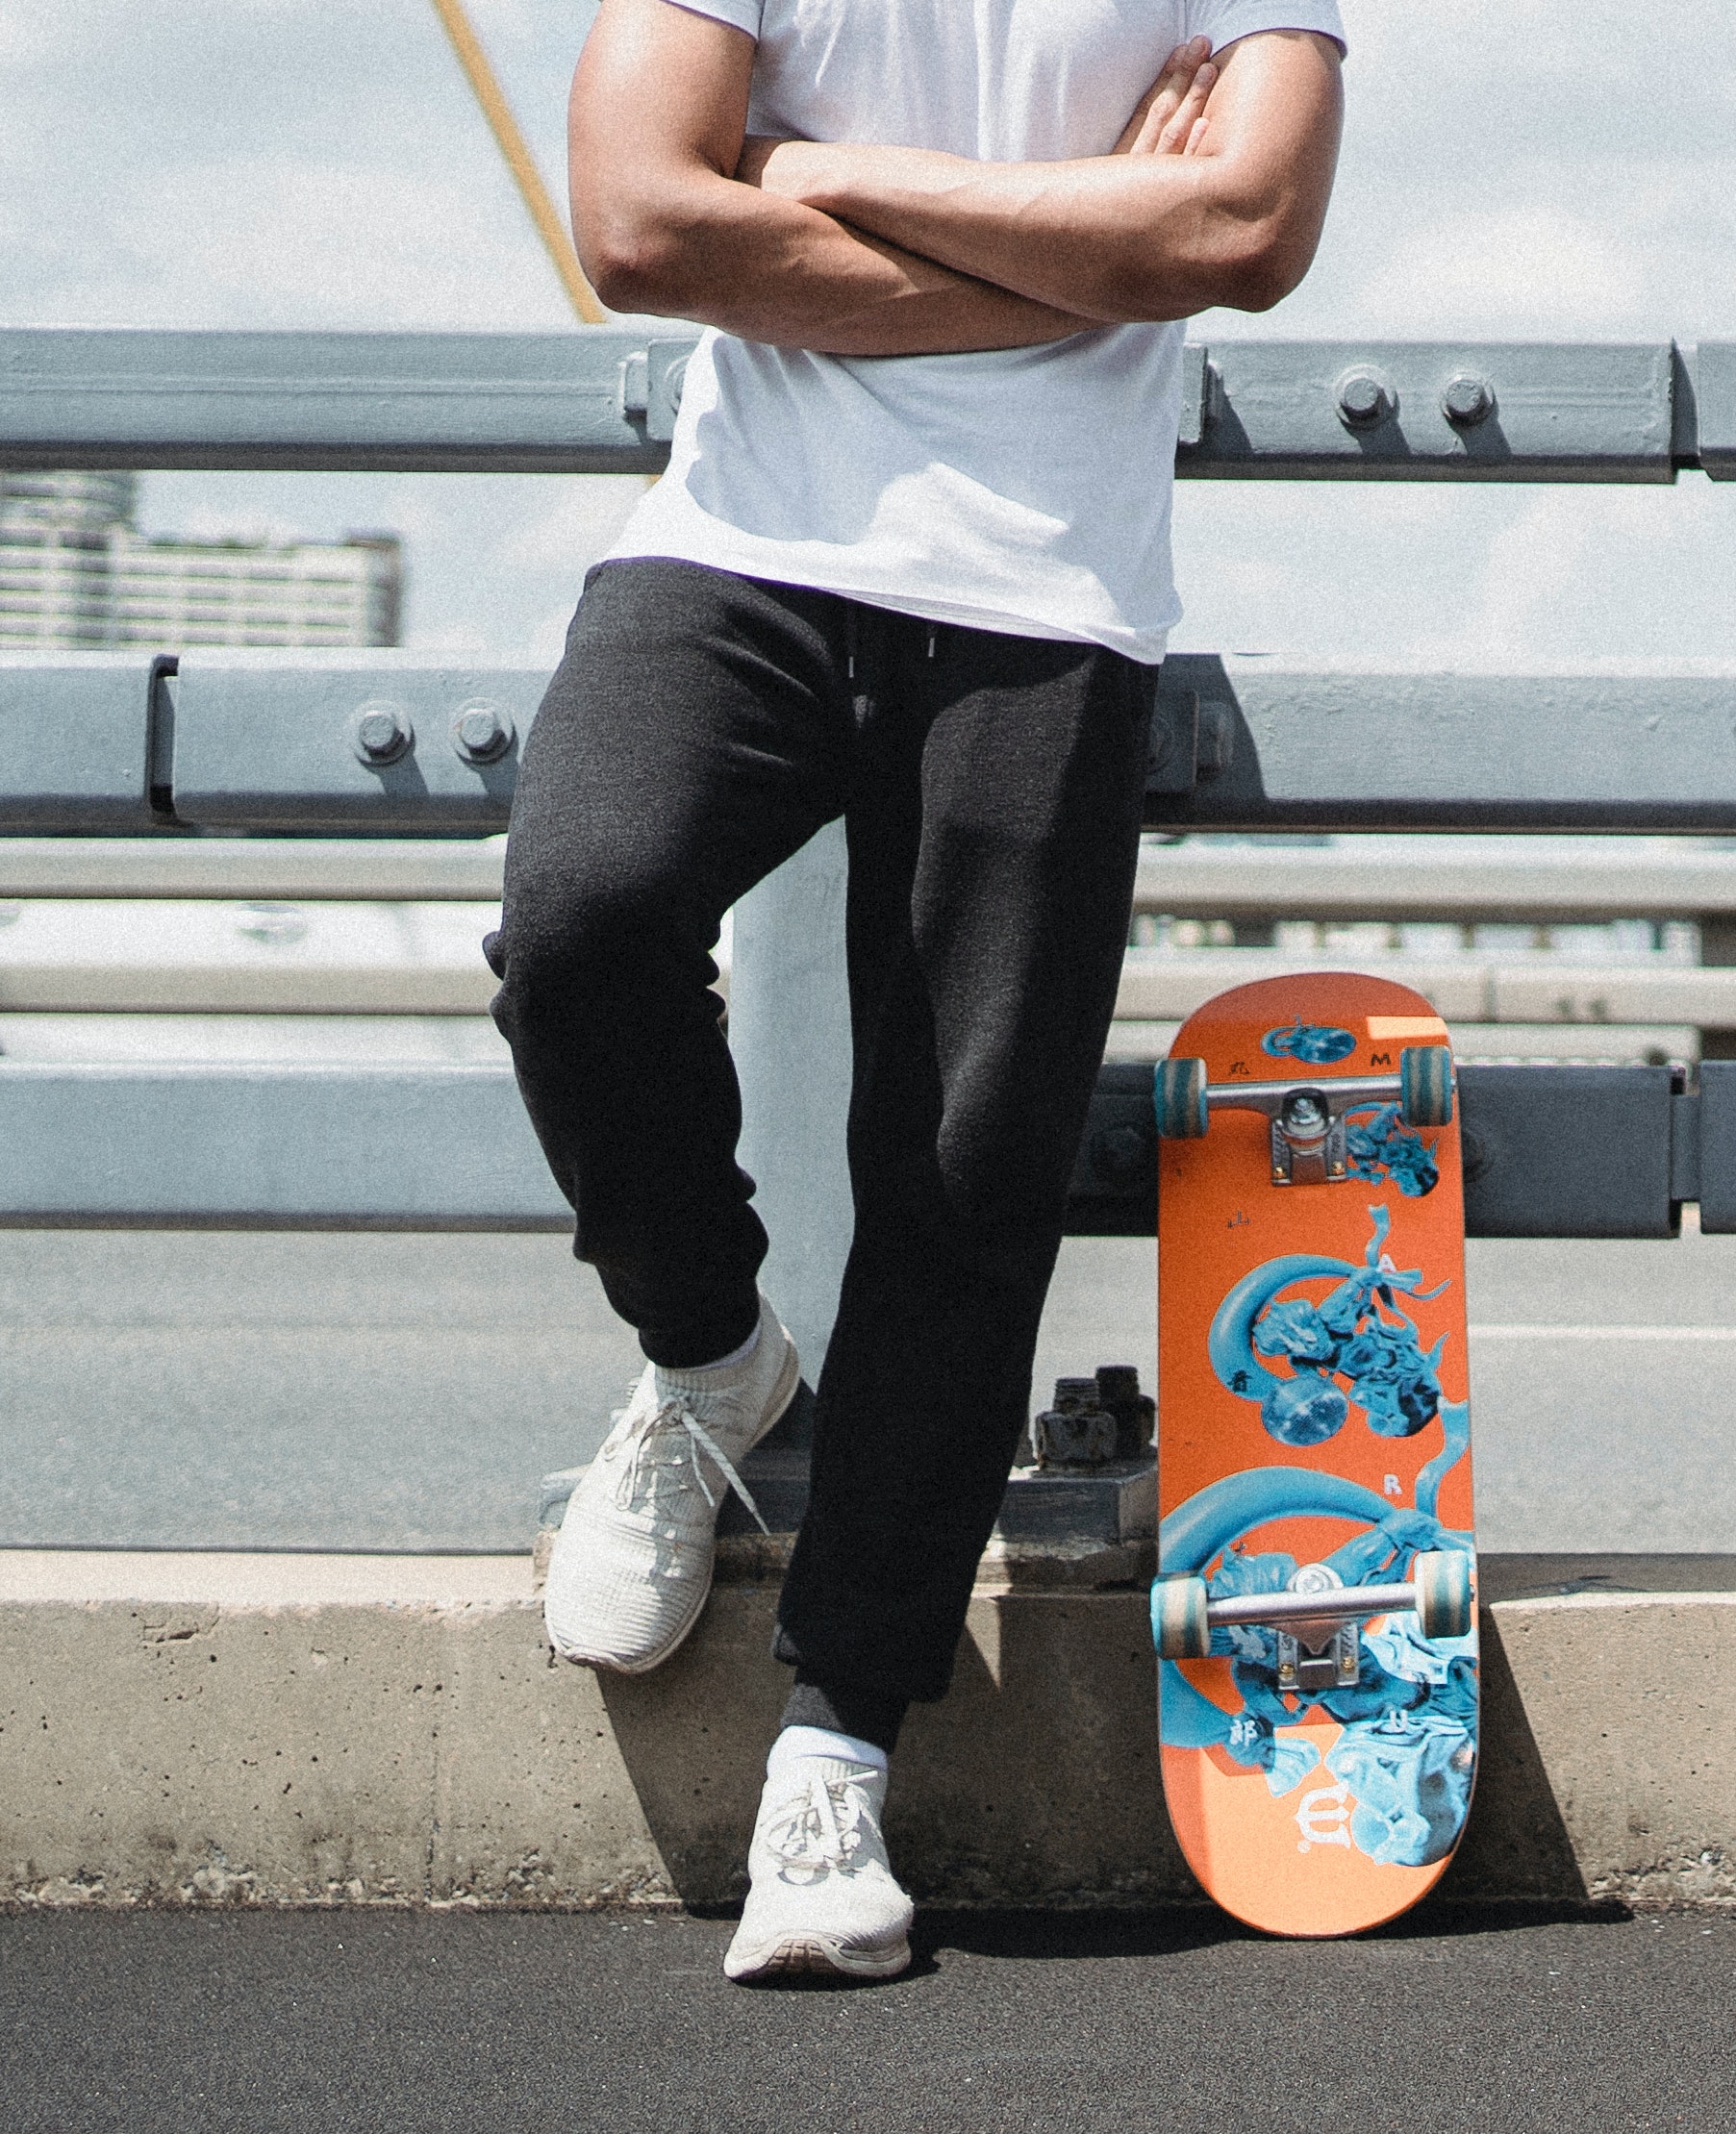 En mand står ved siden af sit skateboard